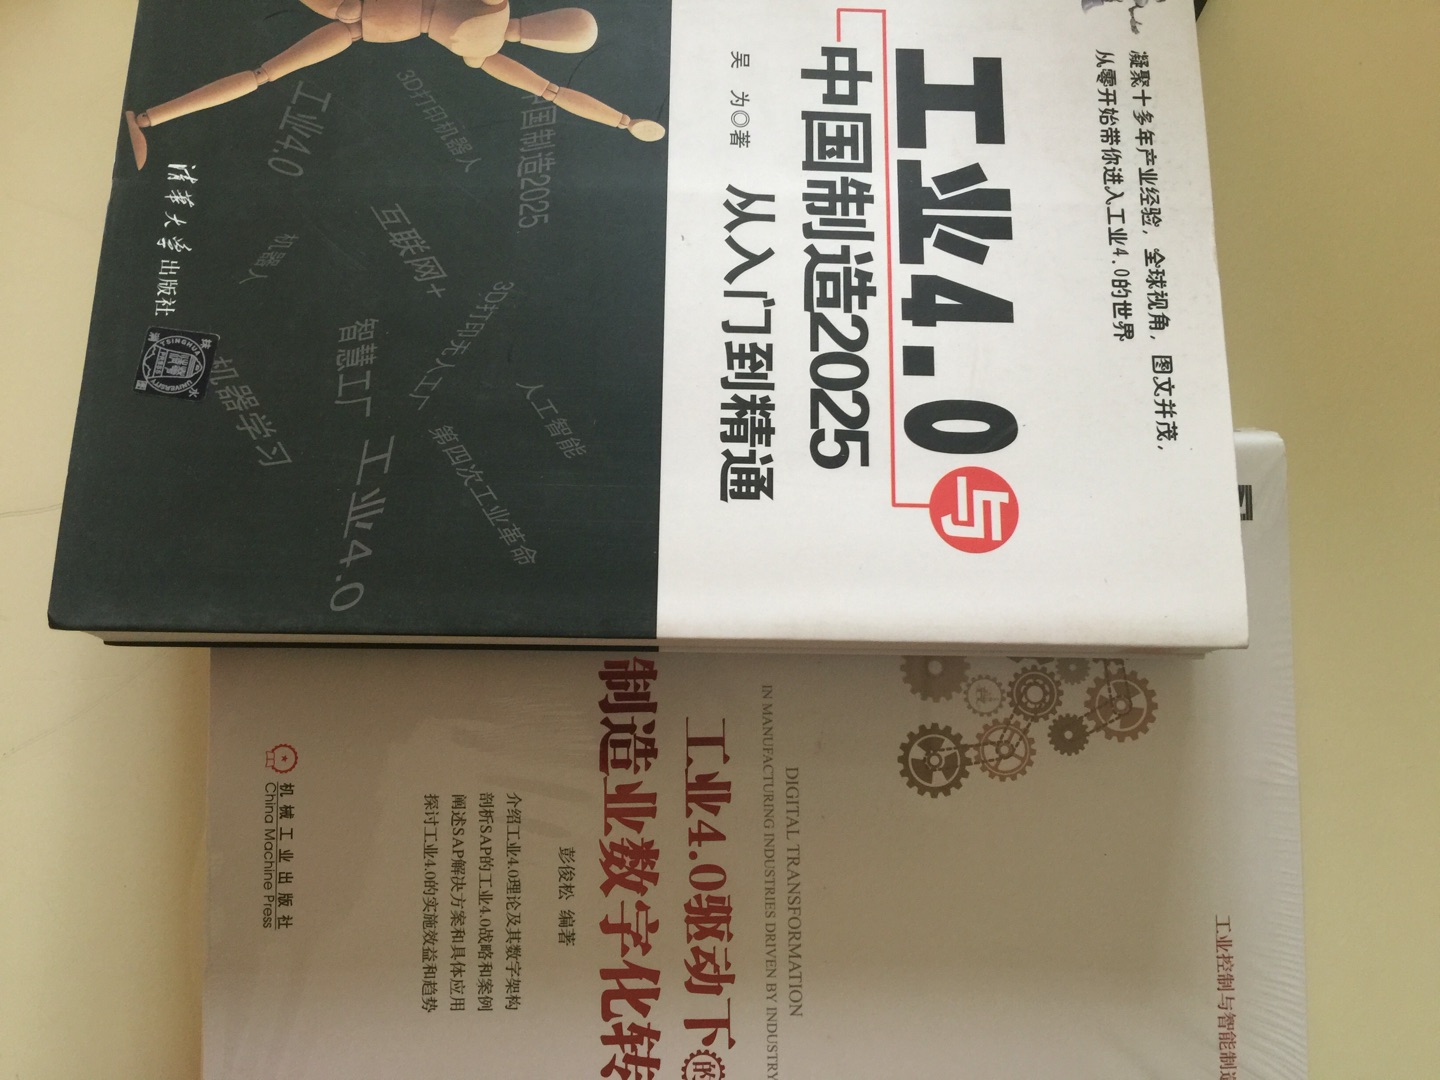 买了好几本相关书籍，学习下工业4.0知识。